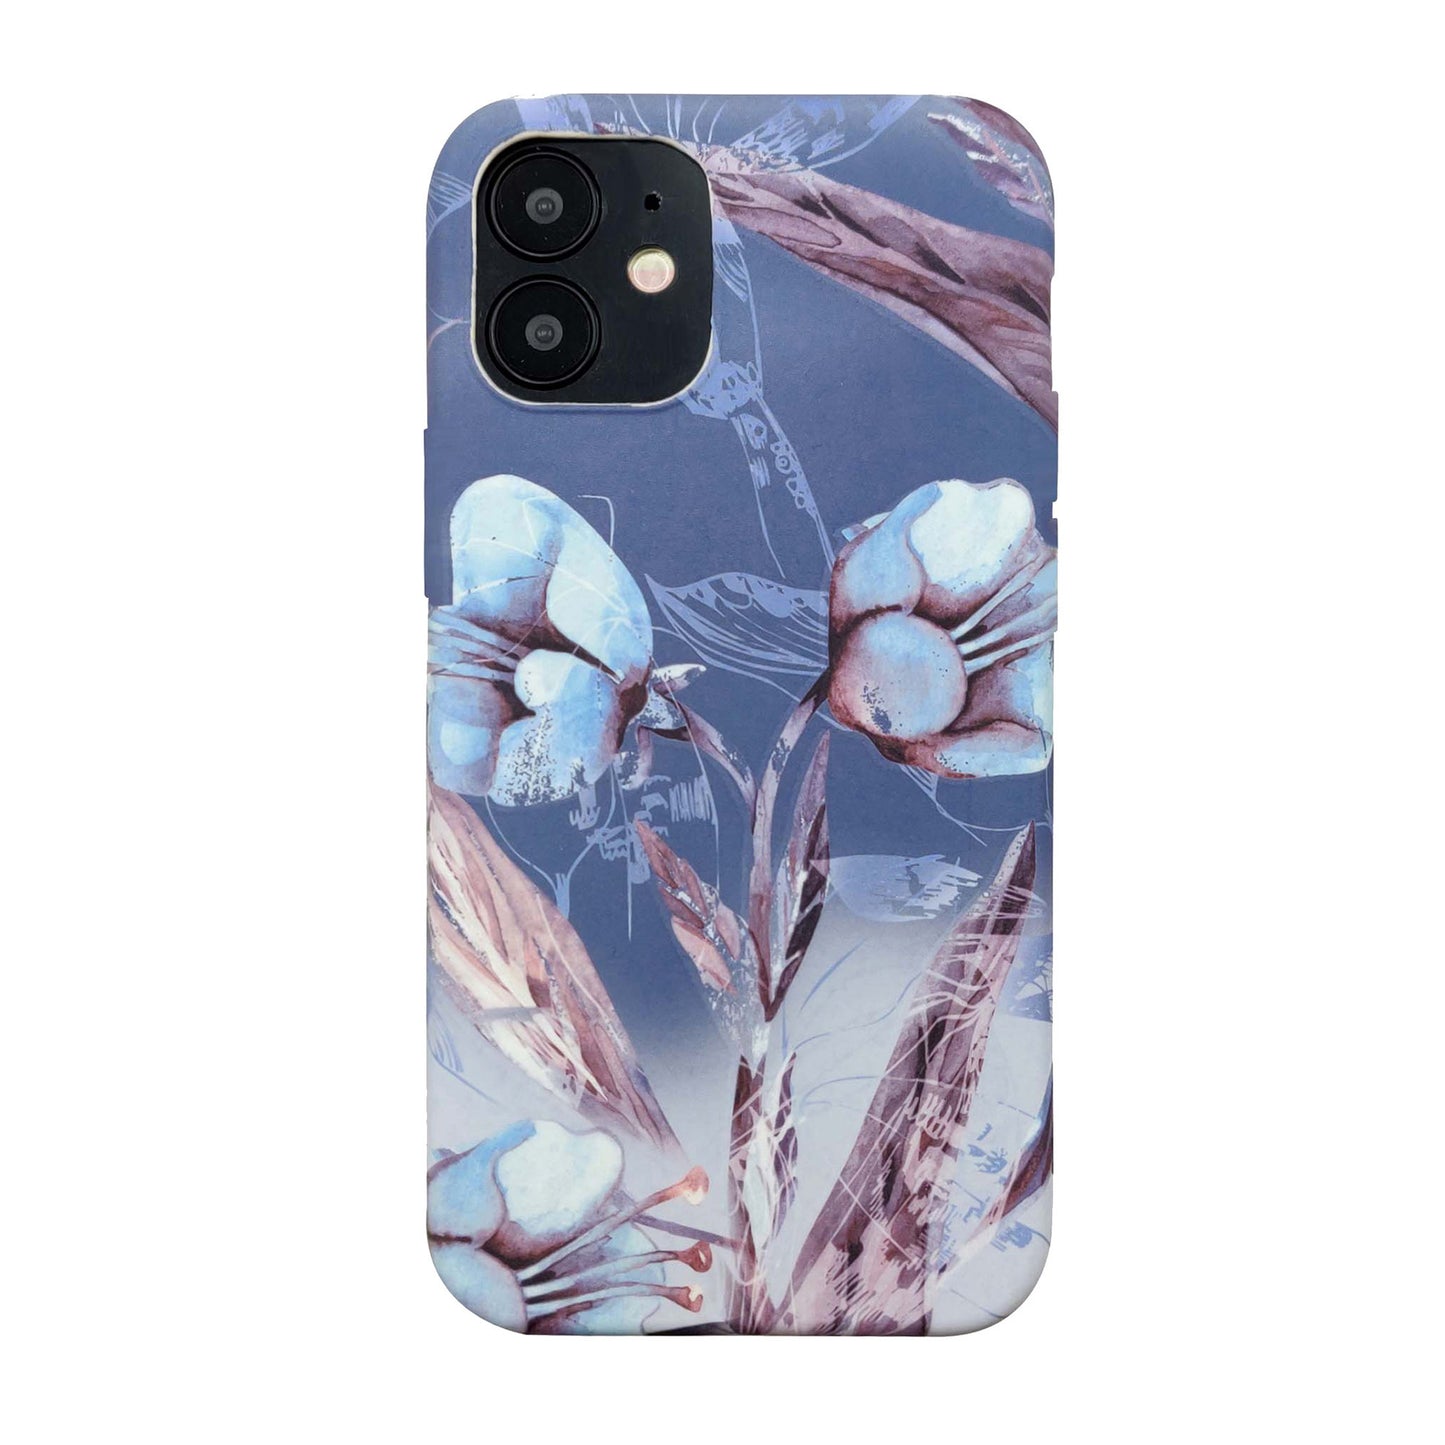 iPhone 12 Mini Uunique Blue (Blue Iris) Nutrisiti Eco Printed Back Case - 15-07610